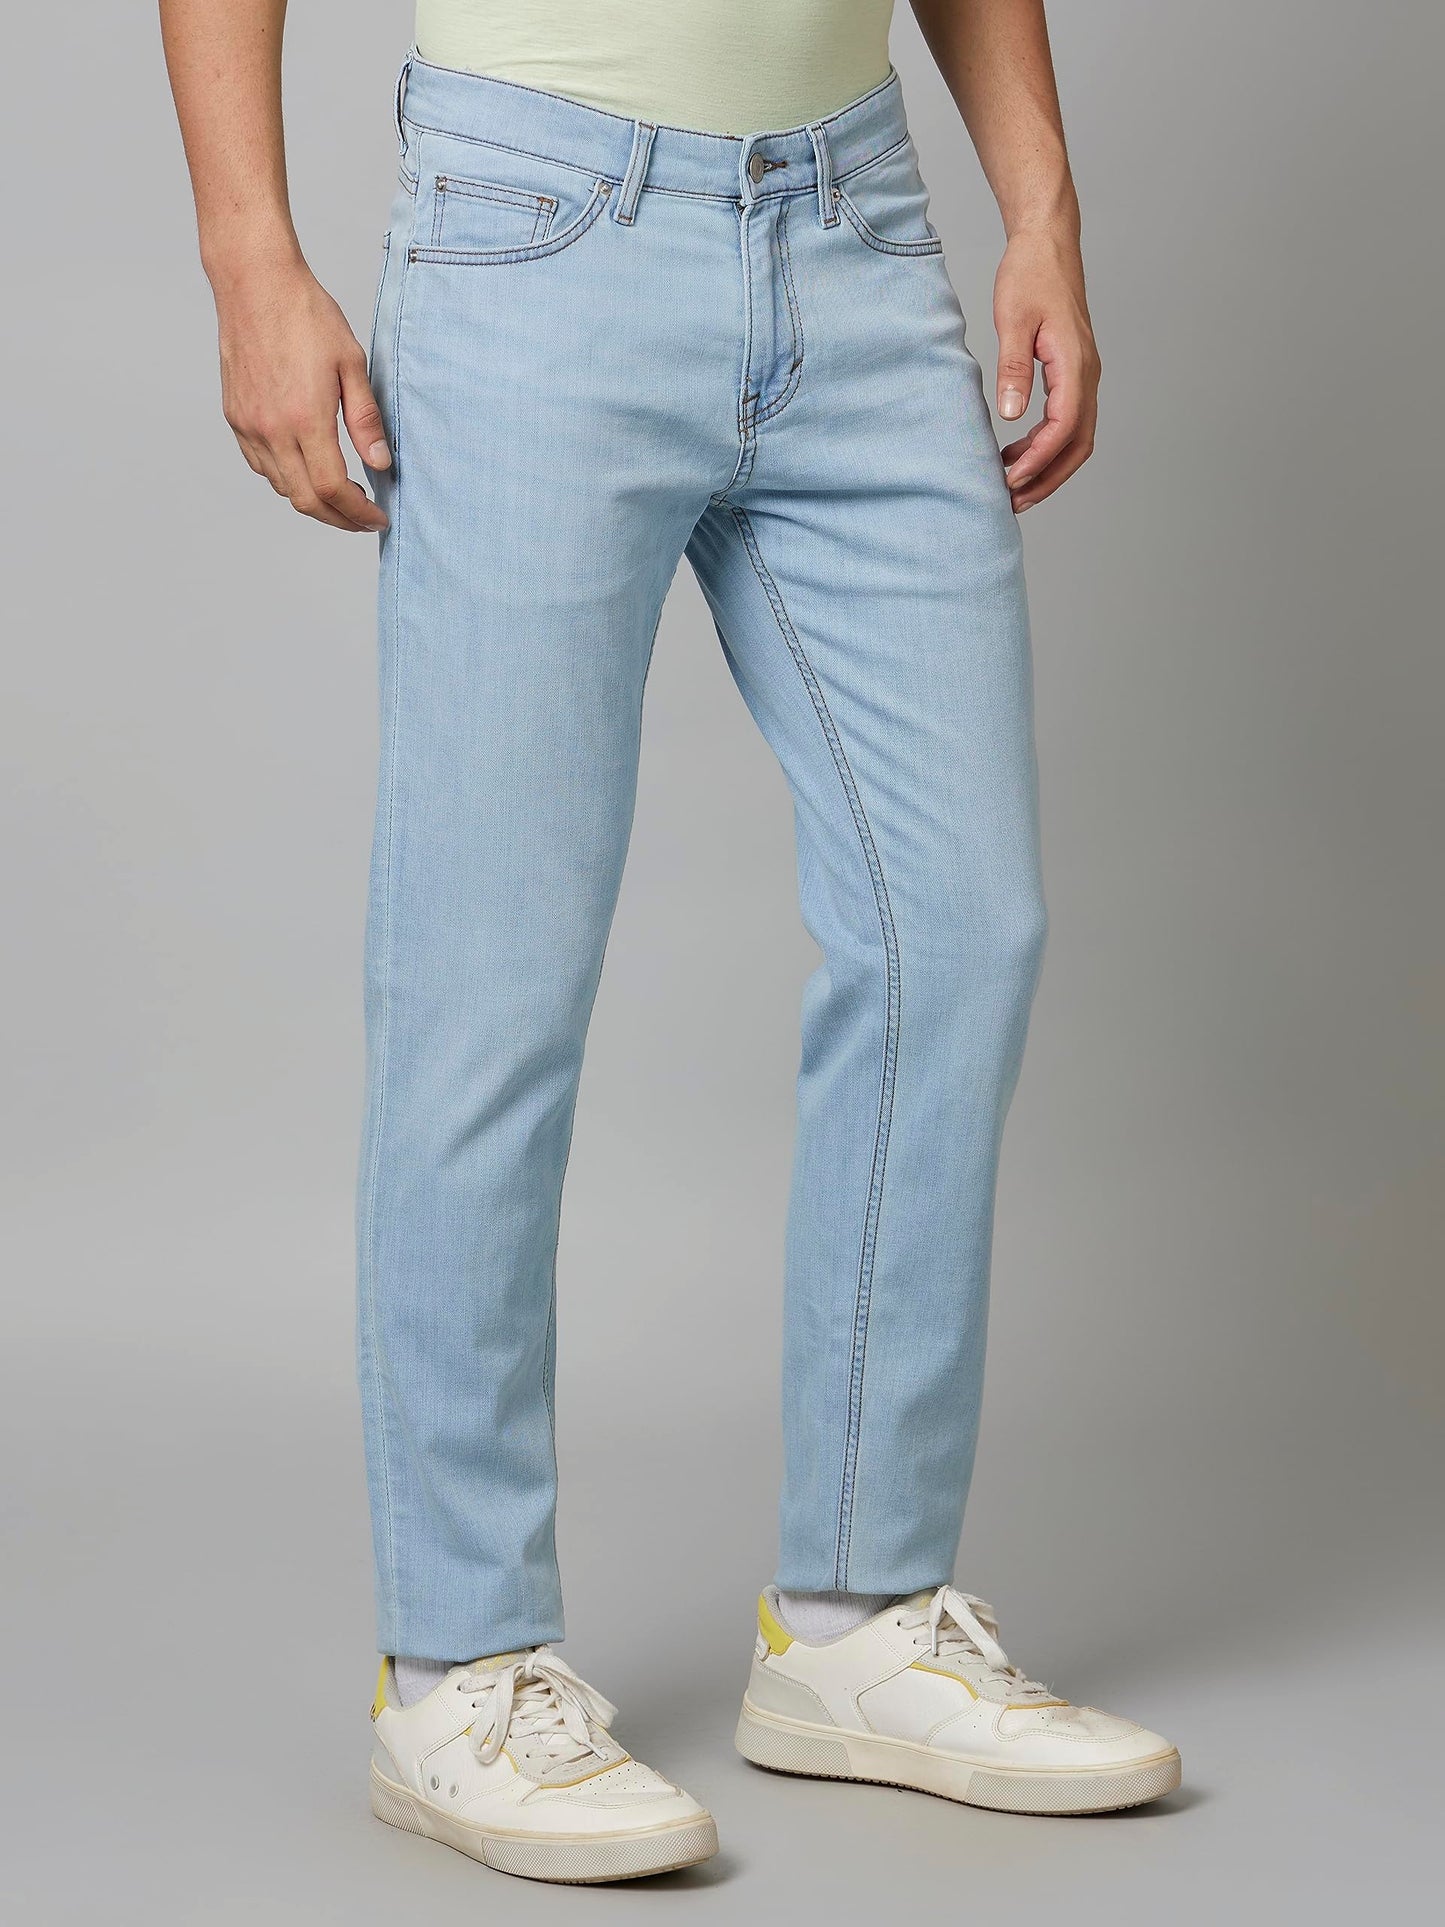 Celio Men's Solid Light-Blue Jeans